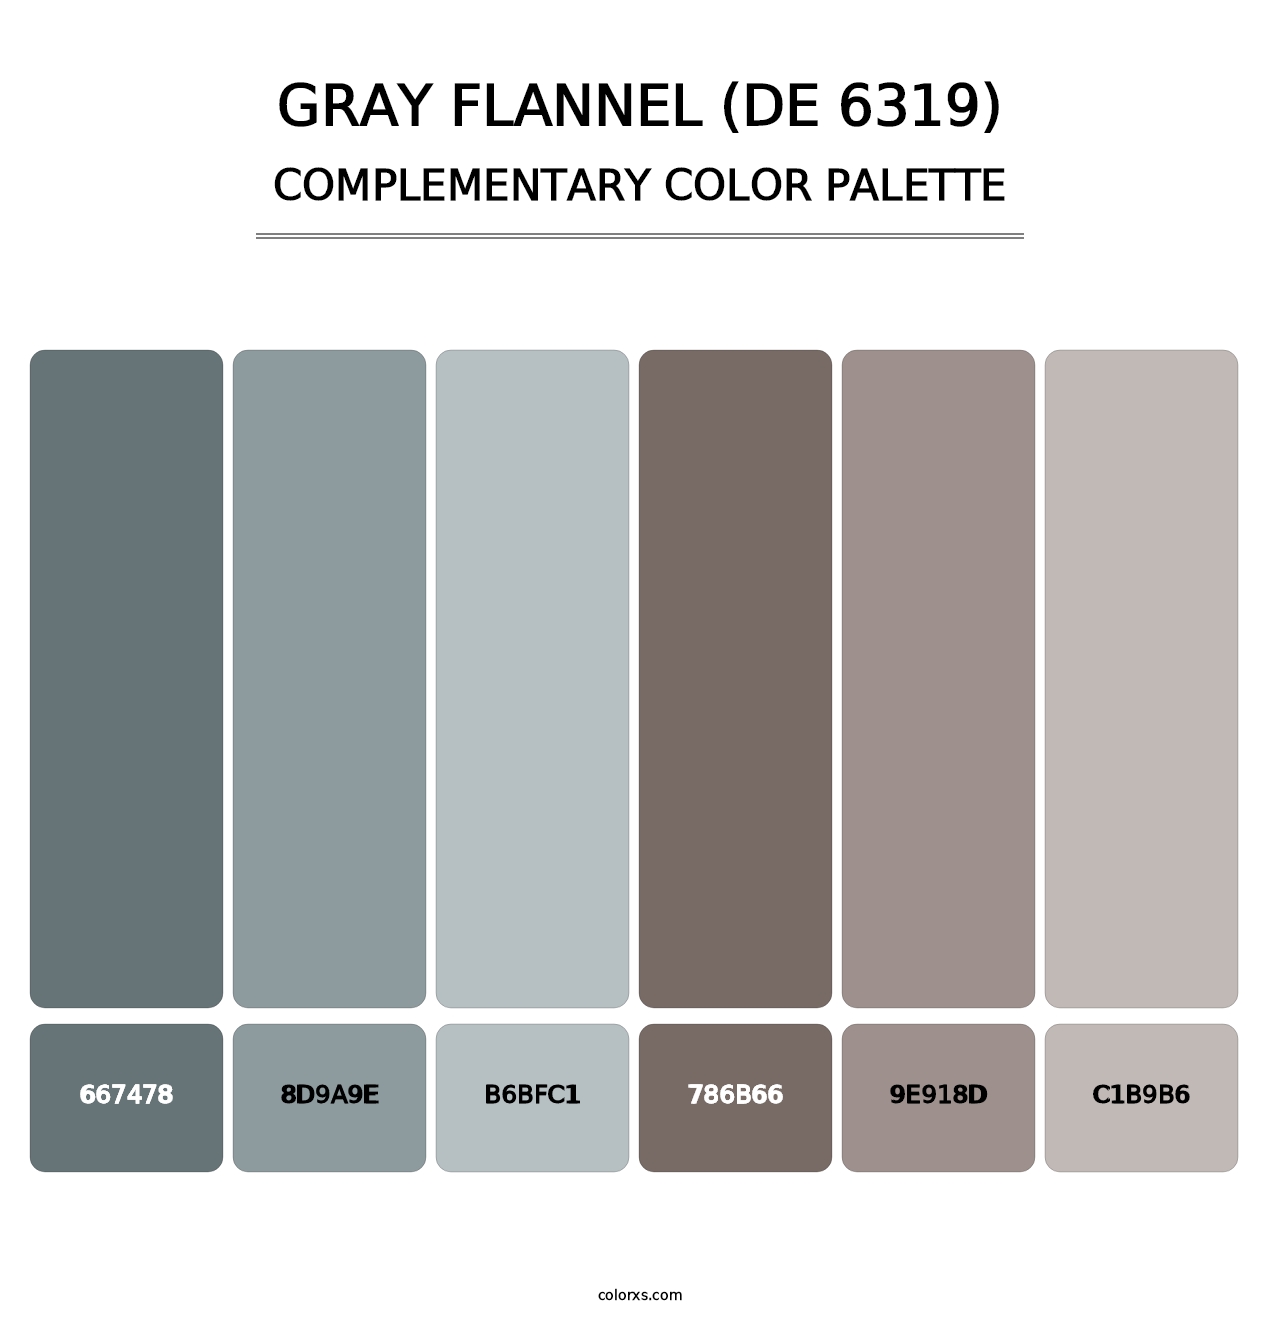 Gray Flannel (DE 6319) - Complementary Color Palette